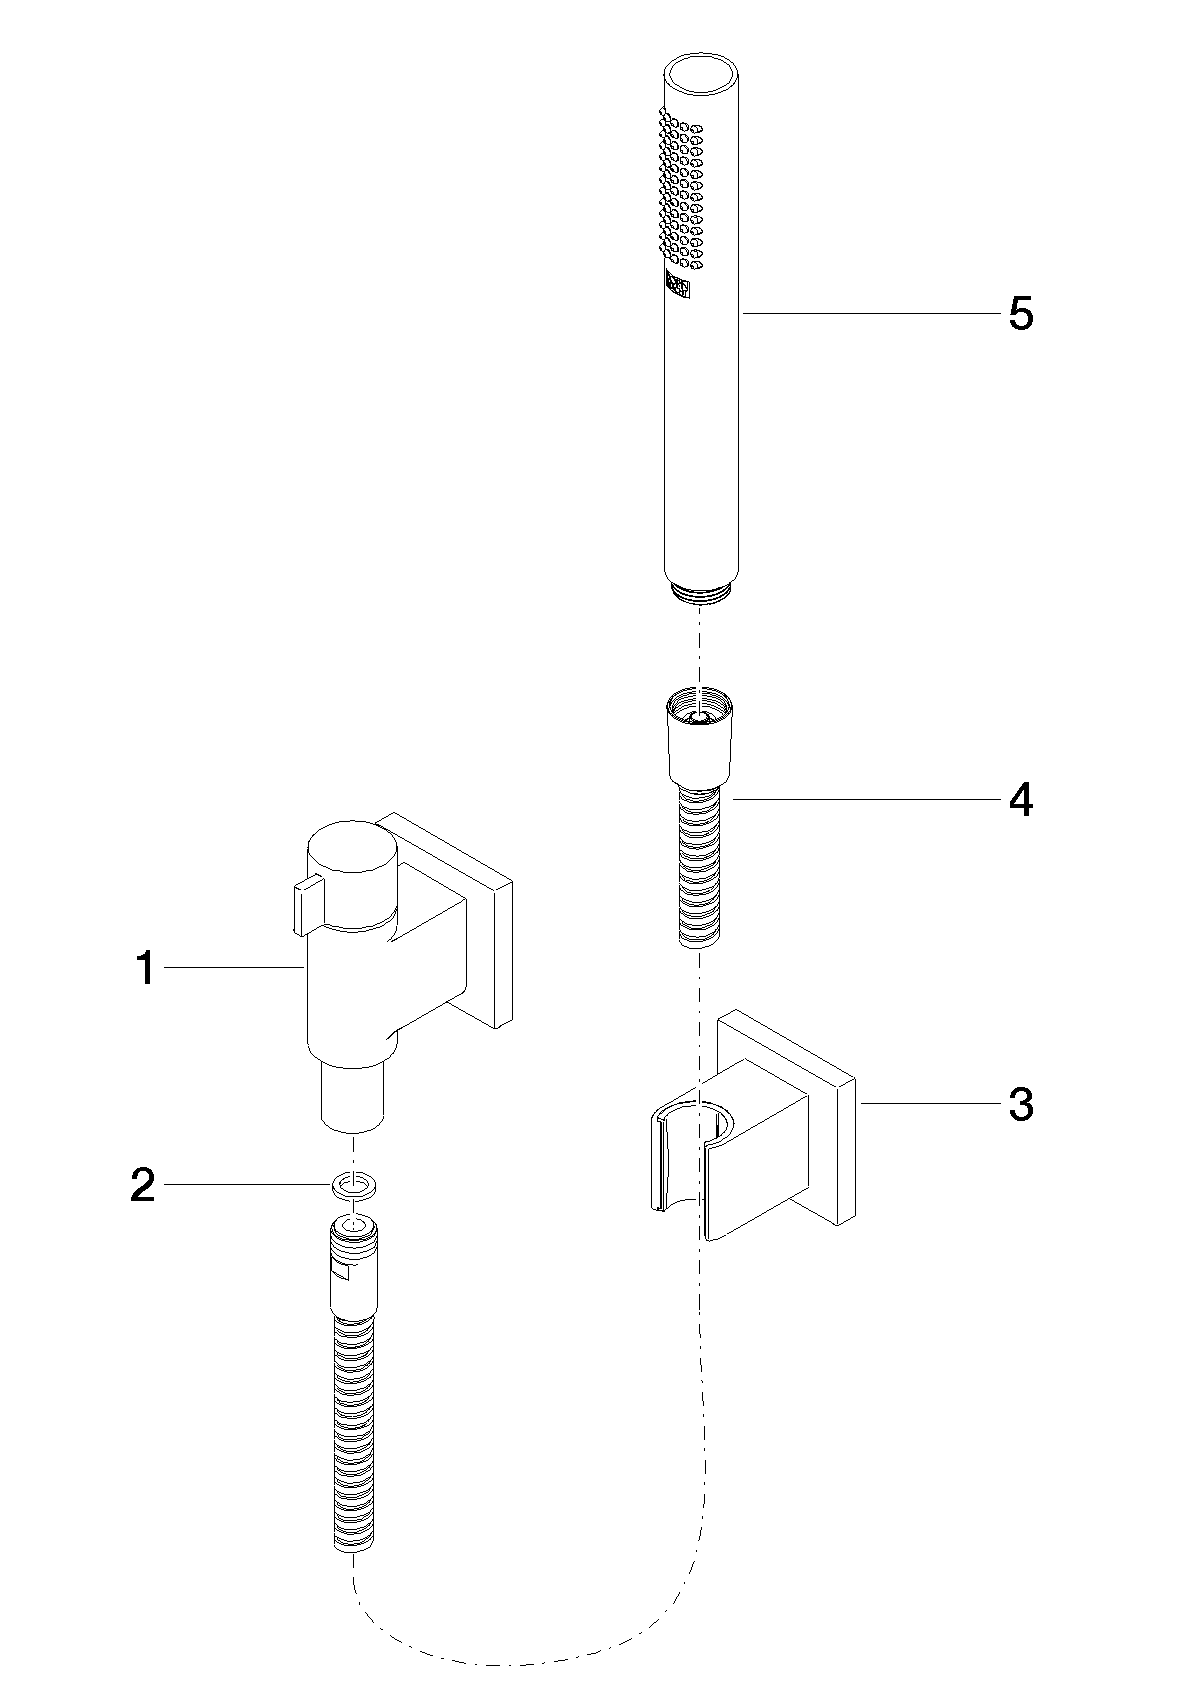 Obrázek DORNBRACHT Sprchová souprava s jednotlivými rozetami s regulací průtoku - chrom #27809985-00